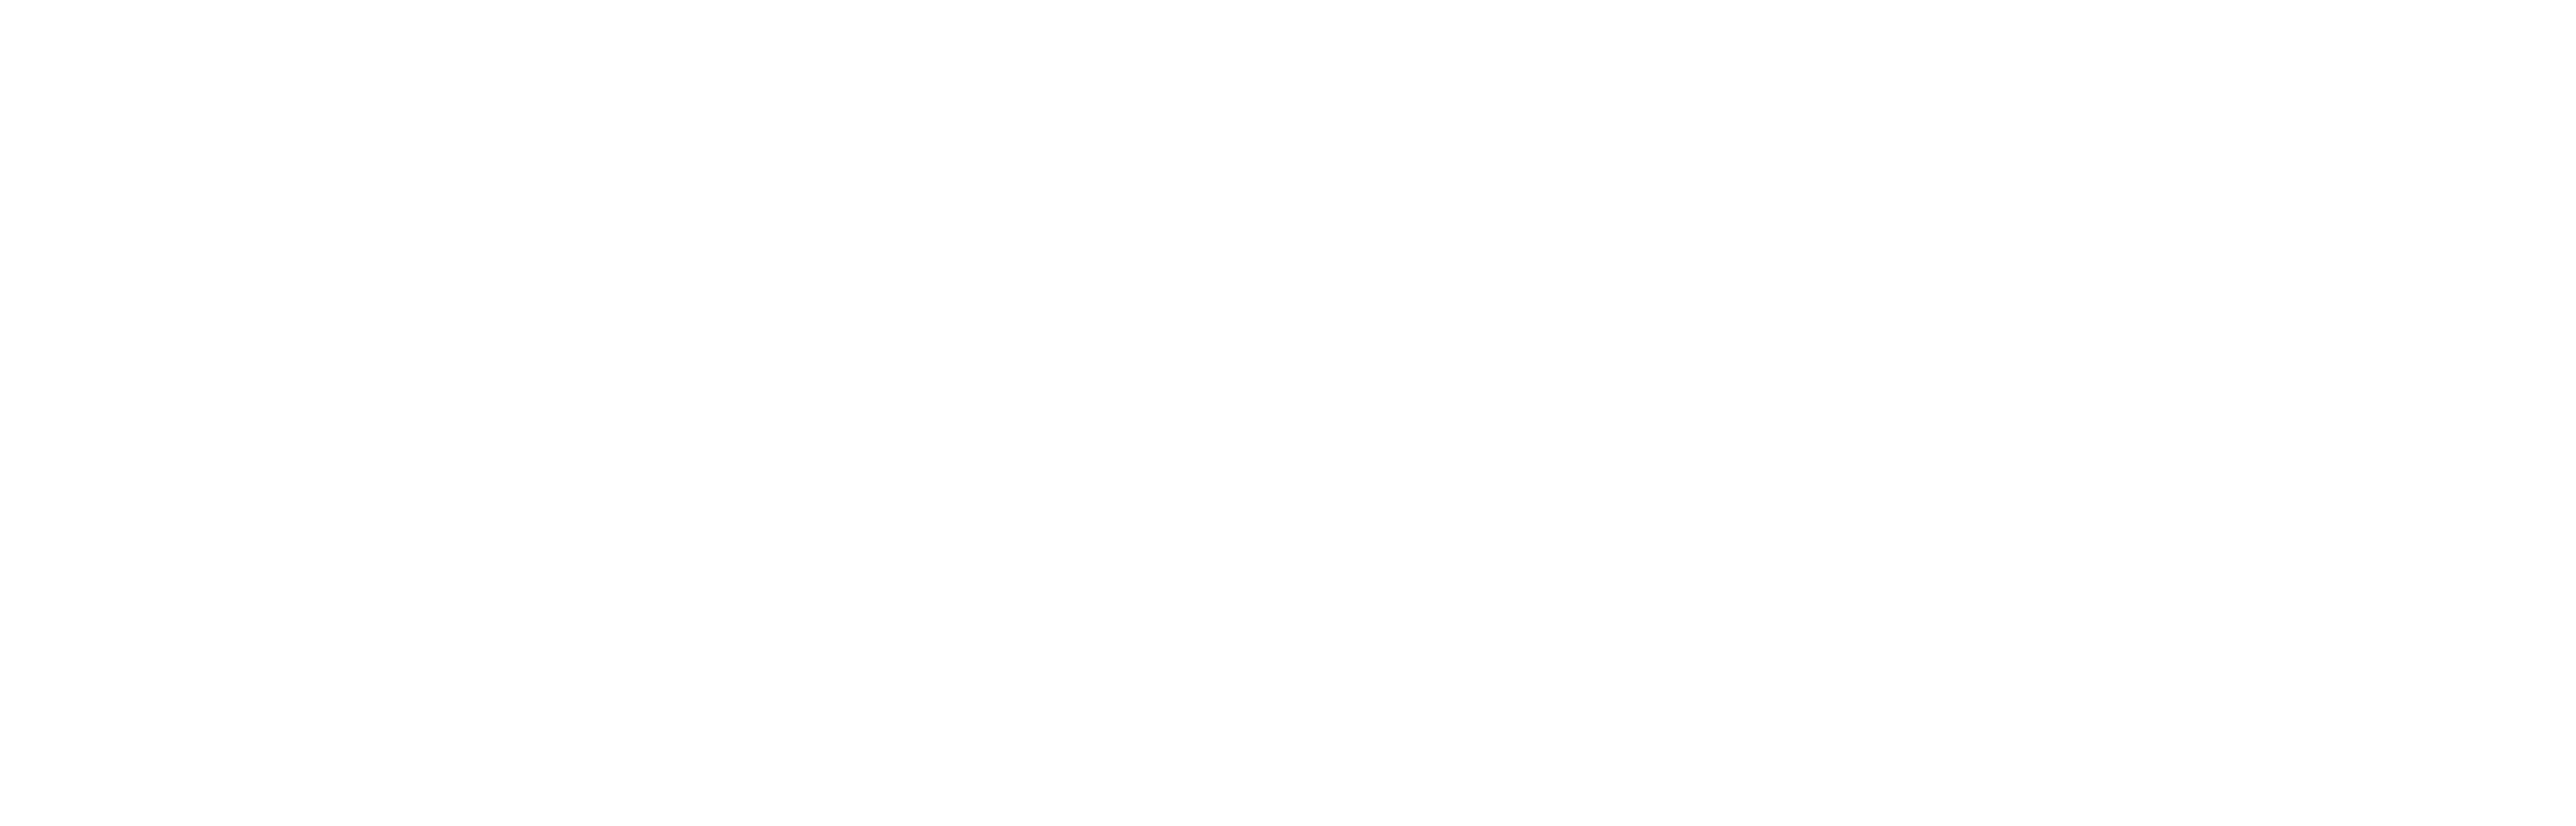 Logo di Redfin